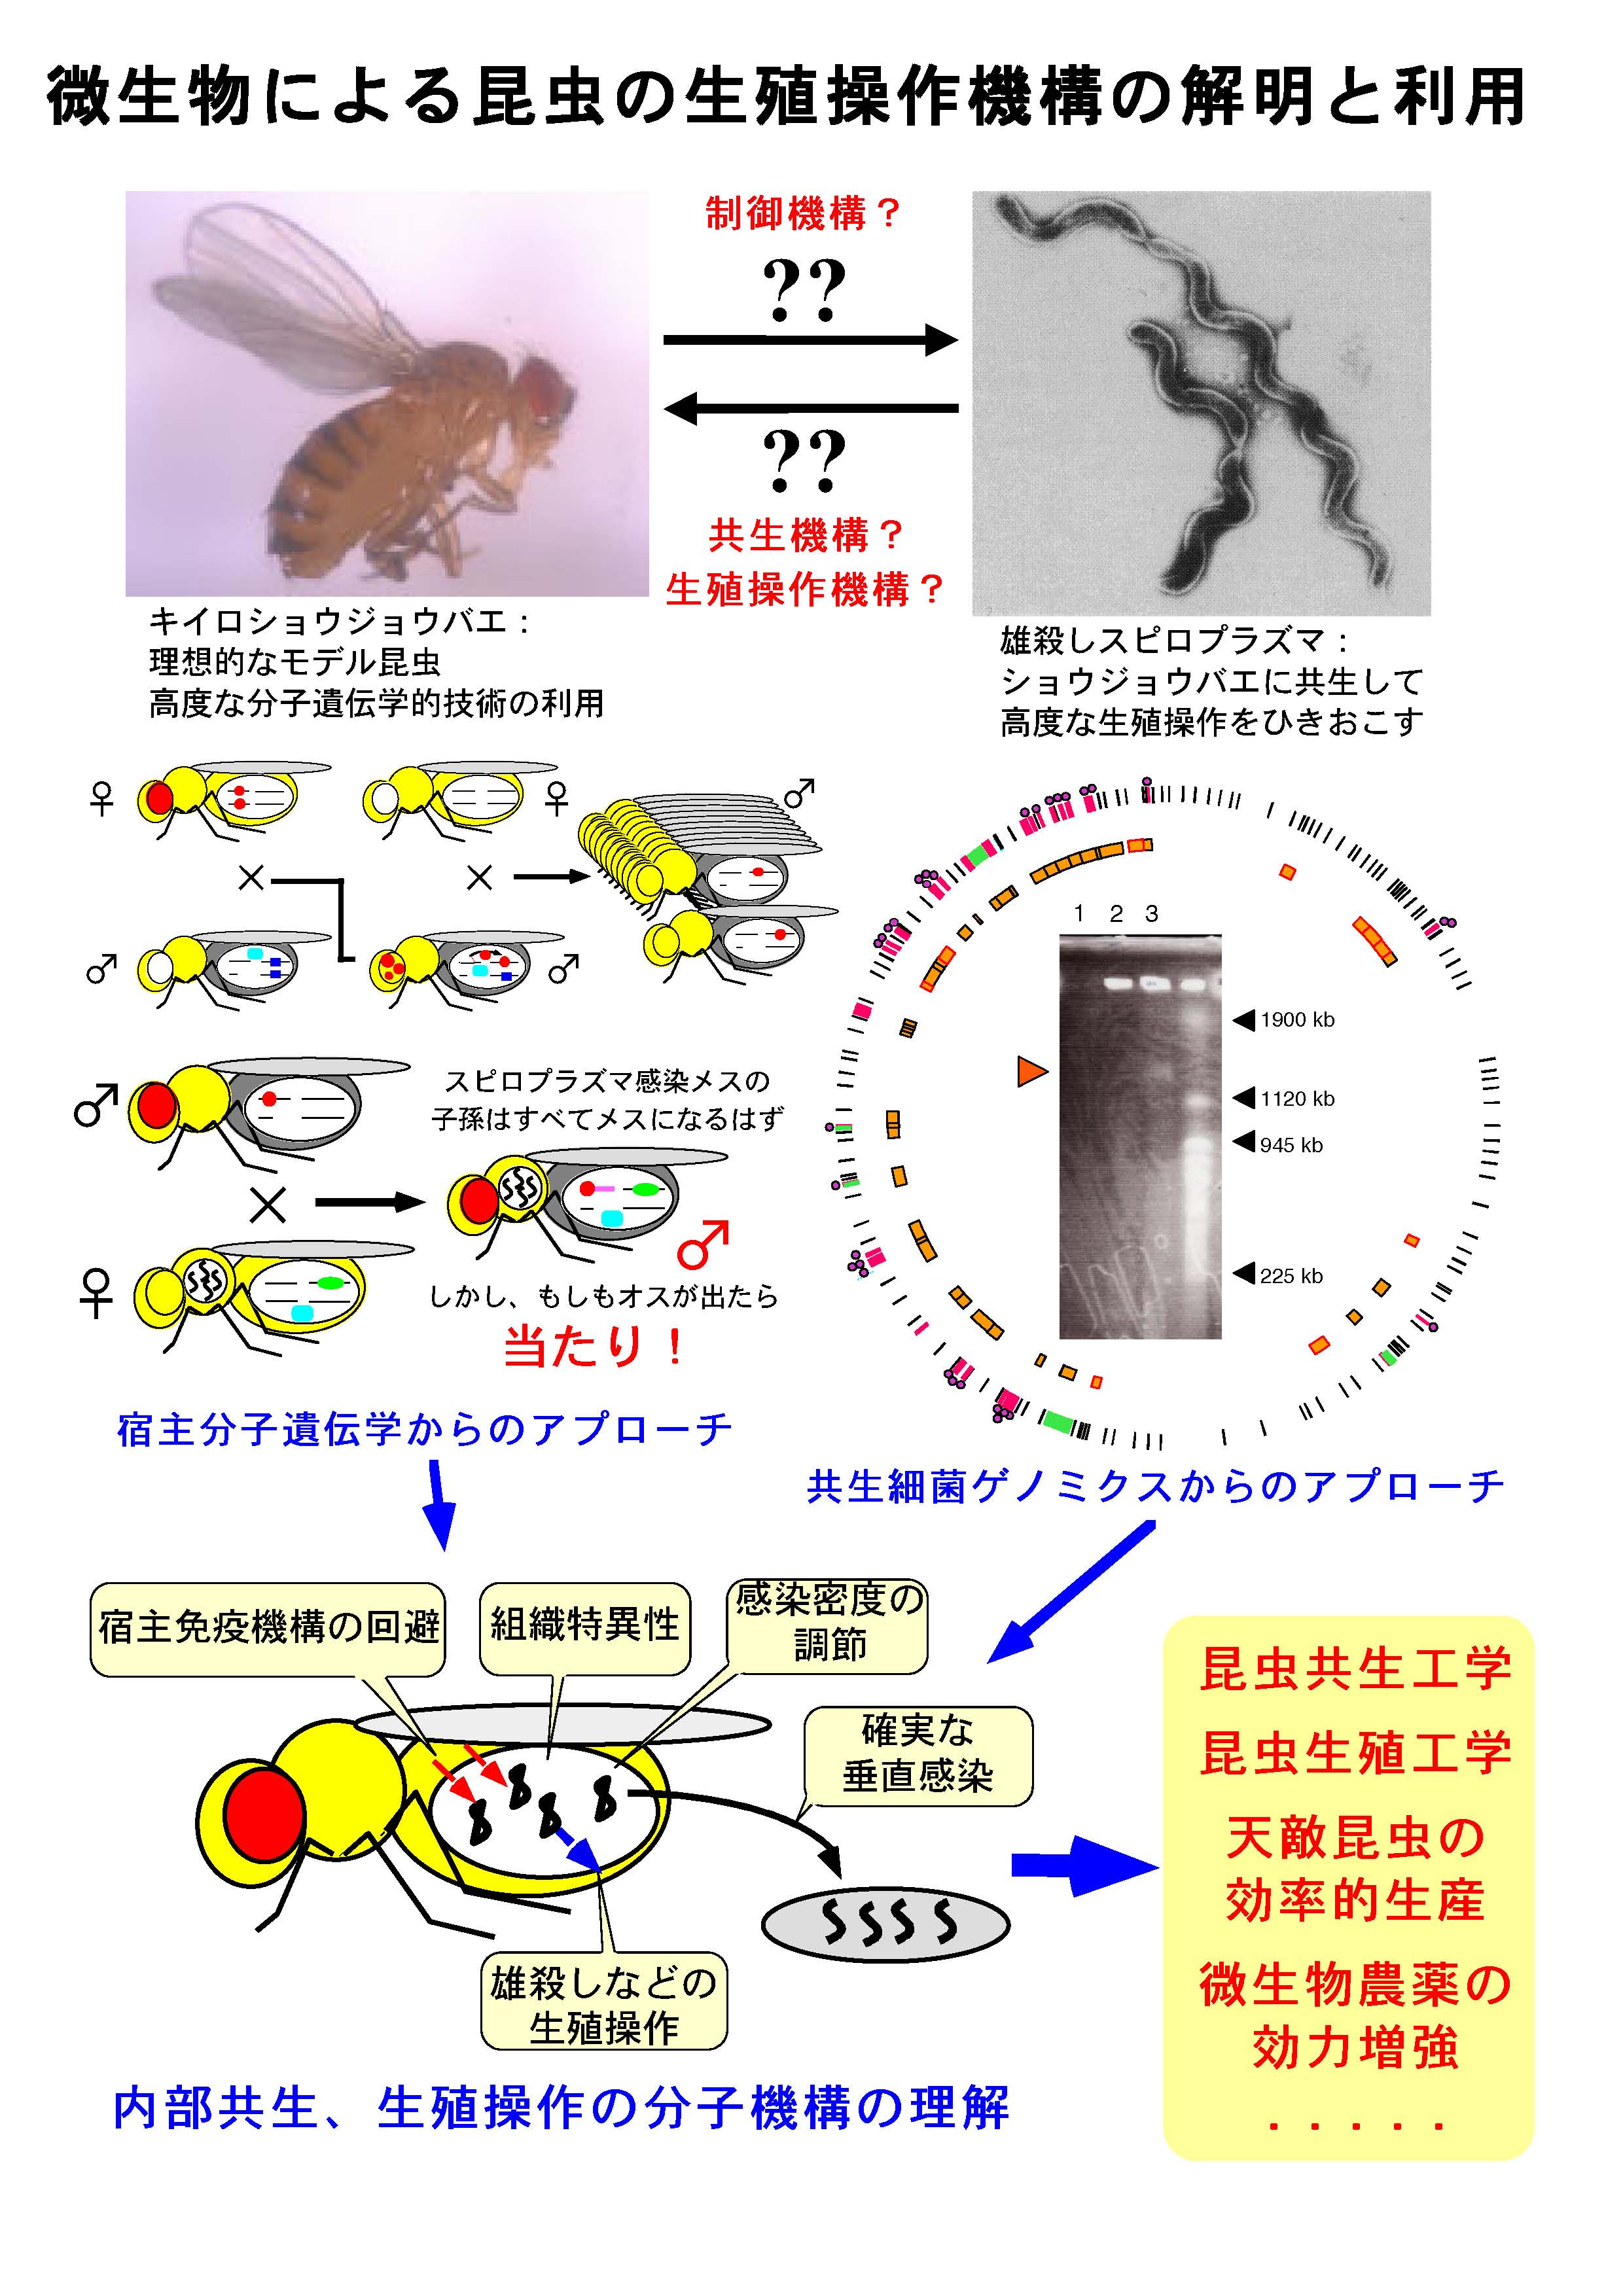 微生物による昆虫の生殖操作機構の解明と利用